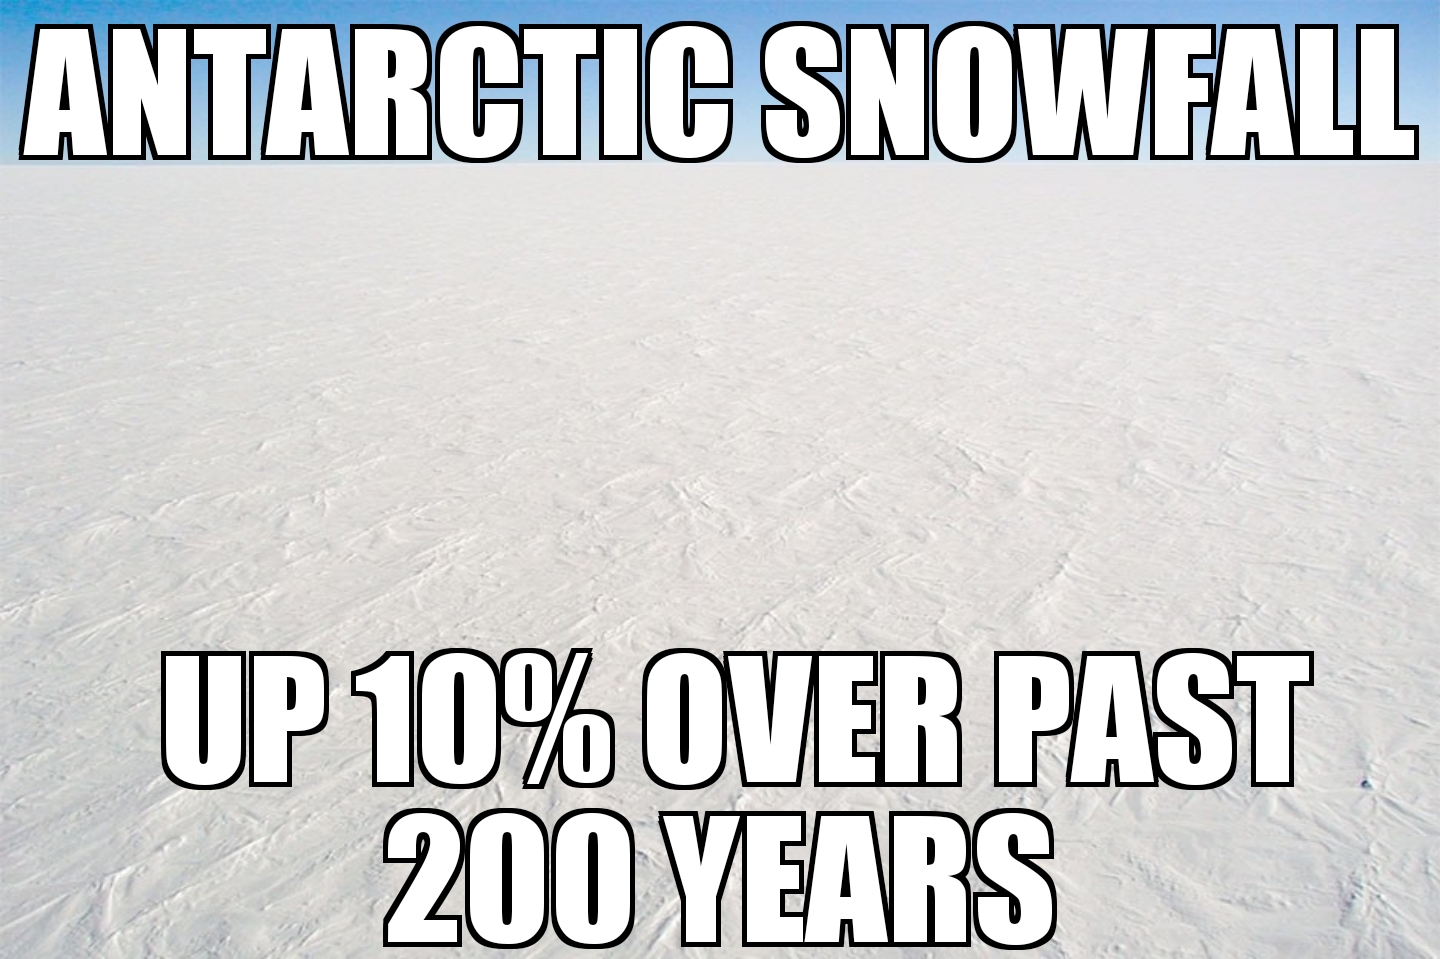 Antarctic snowfall up 10%